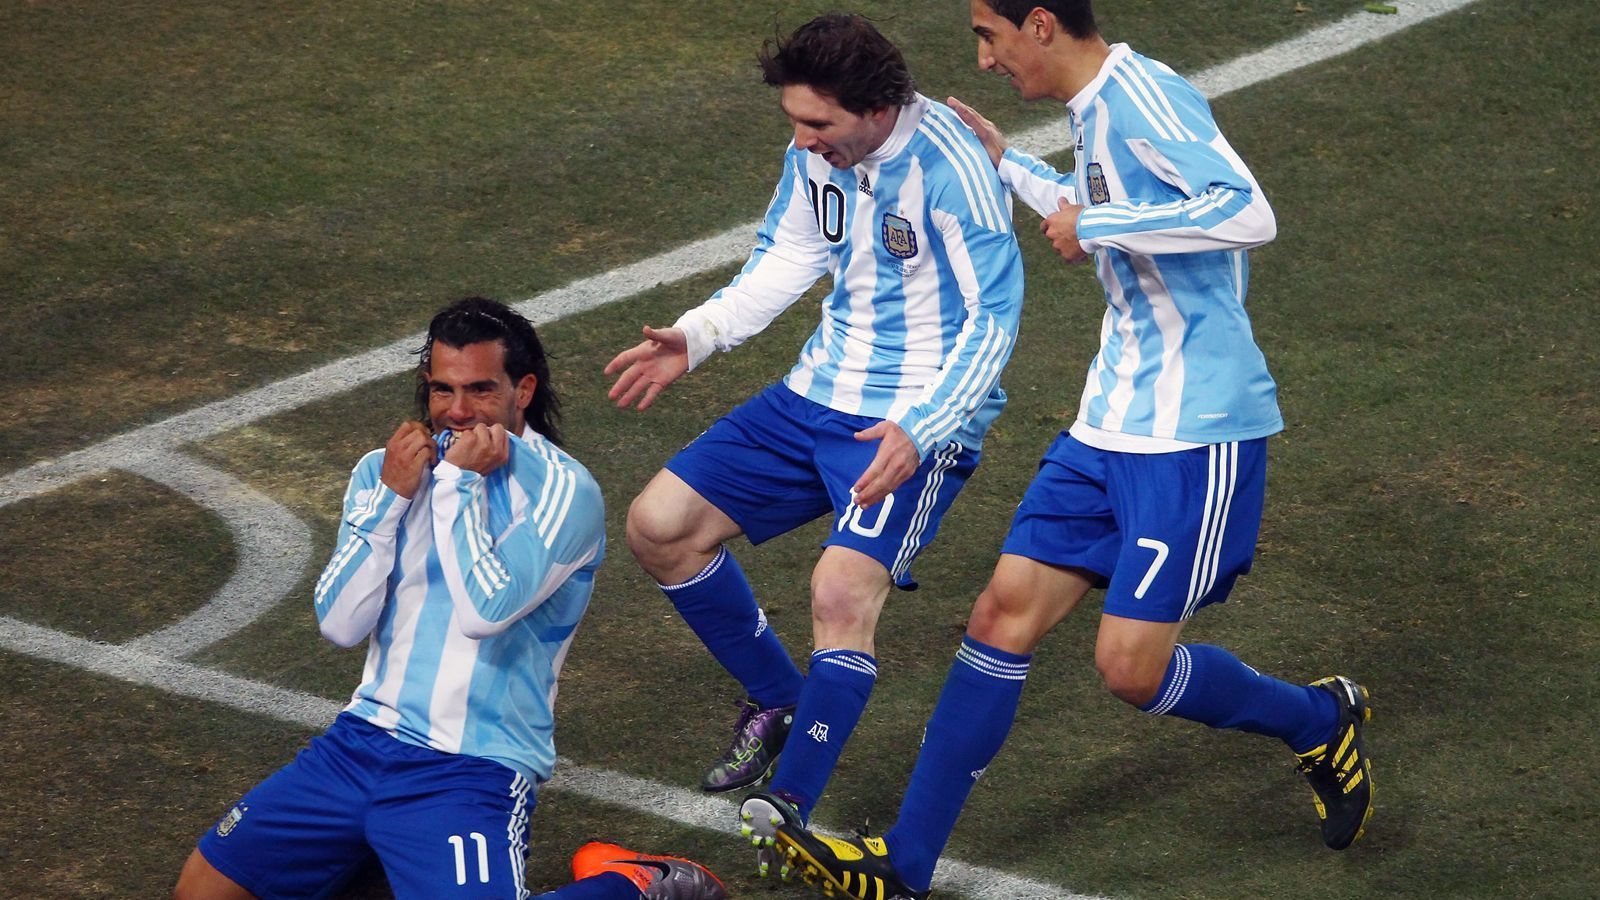 
                <strong>Carlos Tevez</strong><br>
                Mit Carlos Tevez gibt es einen weiteren argentinischen Fußball-Star, der sich als Glücklicher bezeichnen darf, sowohl mit Messi als auch Cristiano Ronaldo in einem Team gespielt zu haben. Mit dem Barca-Idol Messi kickte der heute 35-jährige Tevez einst in der Nationalmannschaft, etwa bei der WM-Endrunde 2010, als Argentinien erst im Viertelfinale an Deutschland scheiterte. Auf Klub-Ebene kreuzten sich hingegen die Wege von Tevez und Cristiano Ronaldo. Das Offensivduo gewann 2008 bei Manchester United die Champions League. Bis vor kurzem spielte Oldie Tevez in der Heimat bei den Boca Juniors, aktuell ist er vereinslos.
              